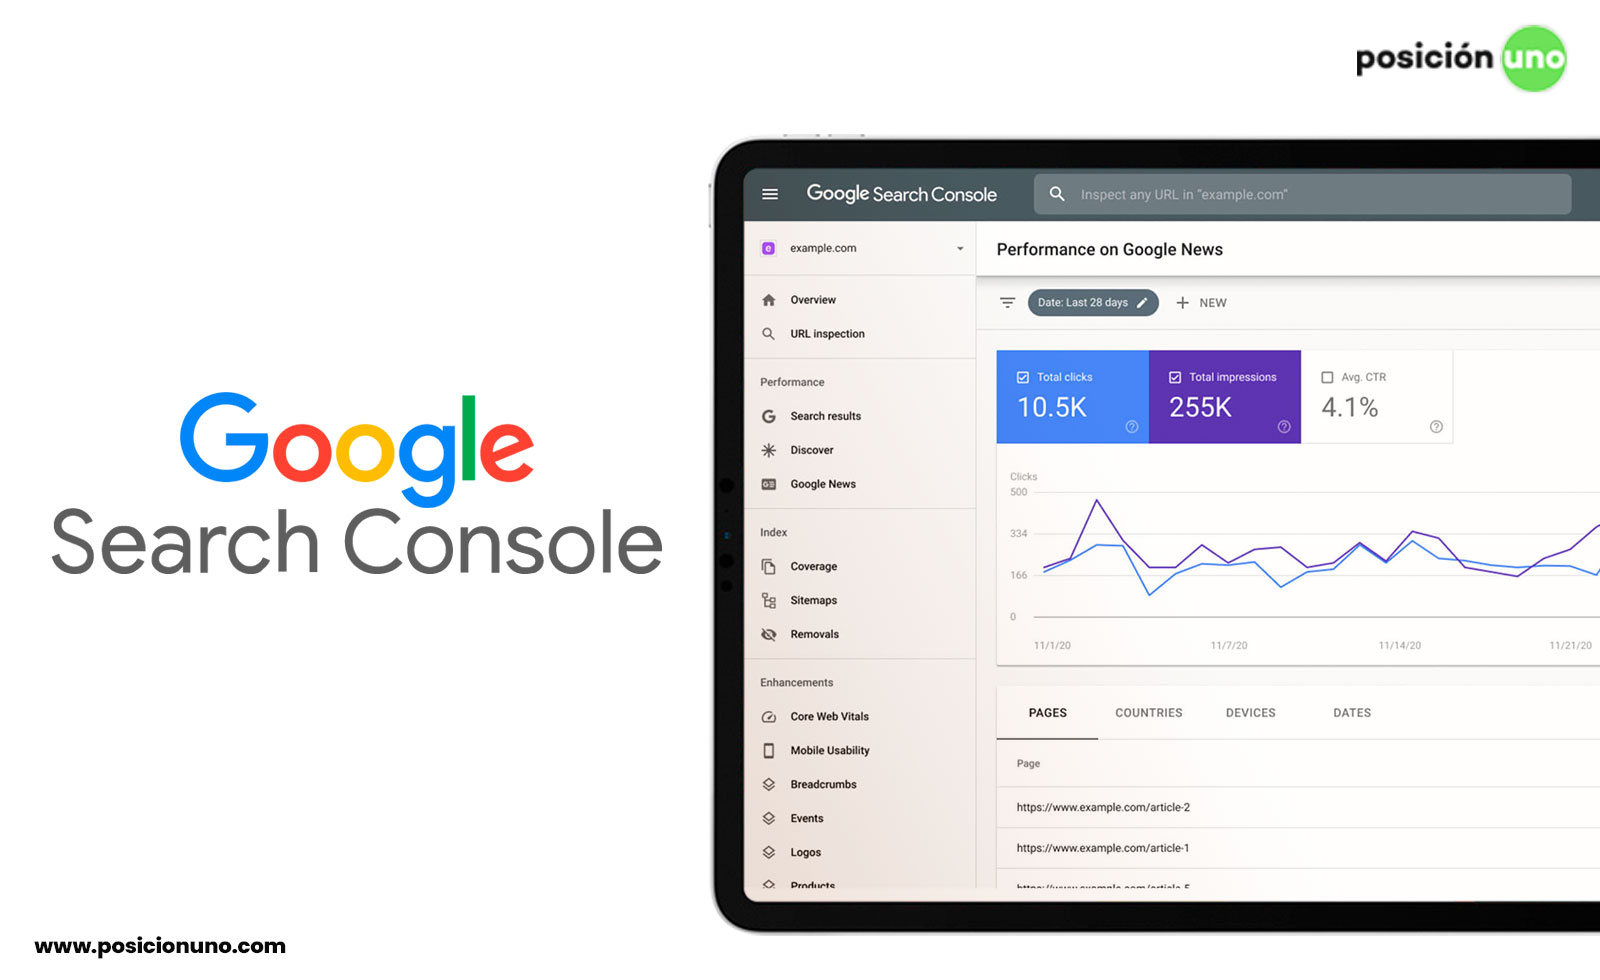 Google Search Console es una herramienta gratuita de Google que permite al propietario tener un informe del rendimiento y así optimizarlo.